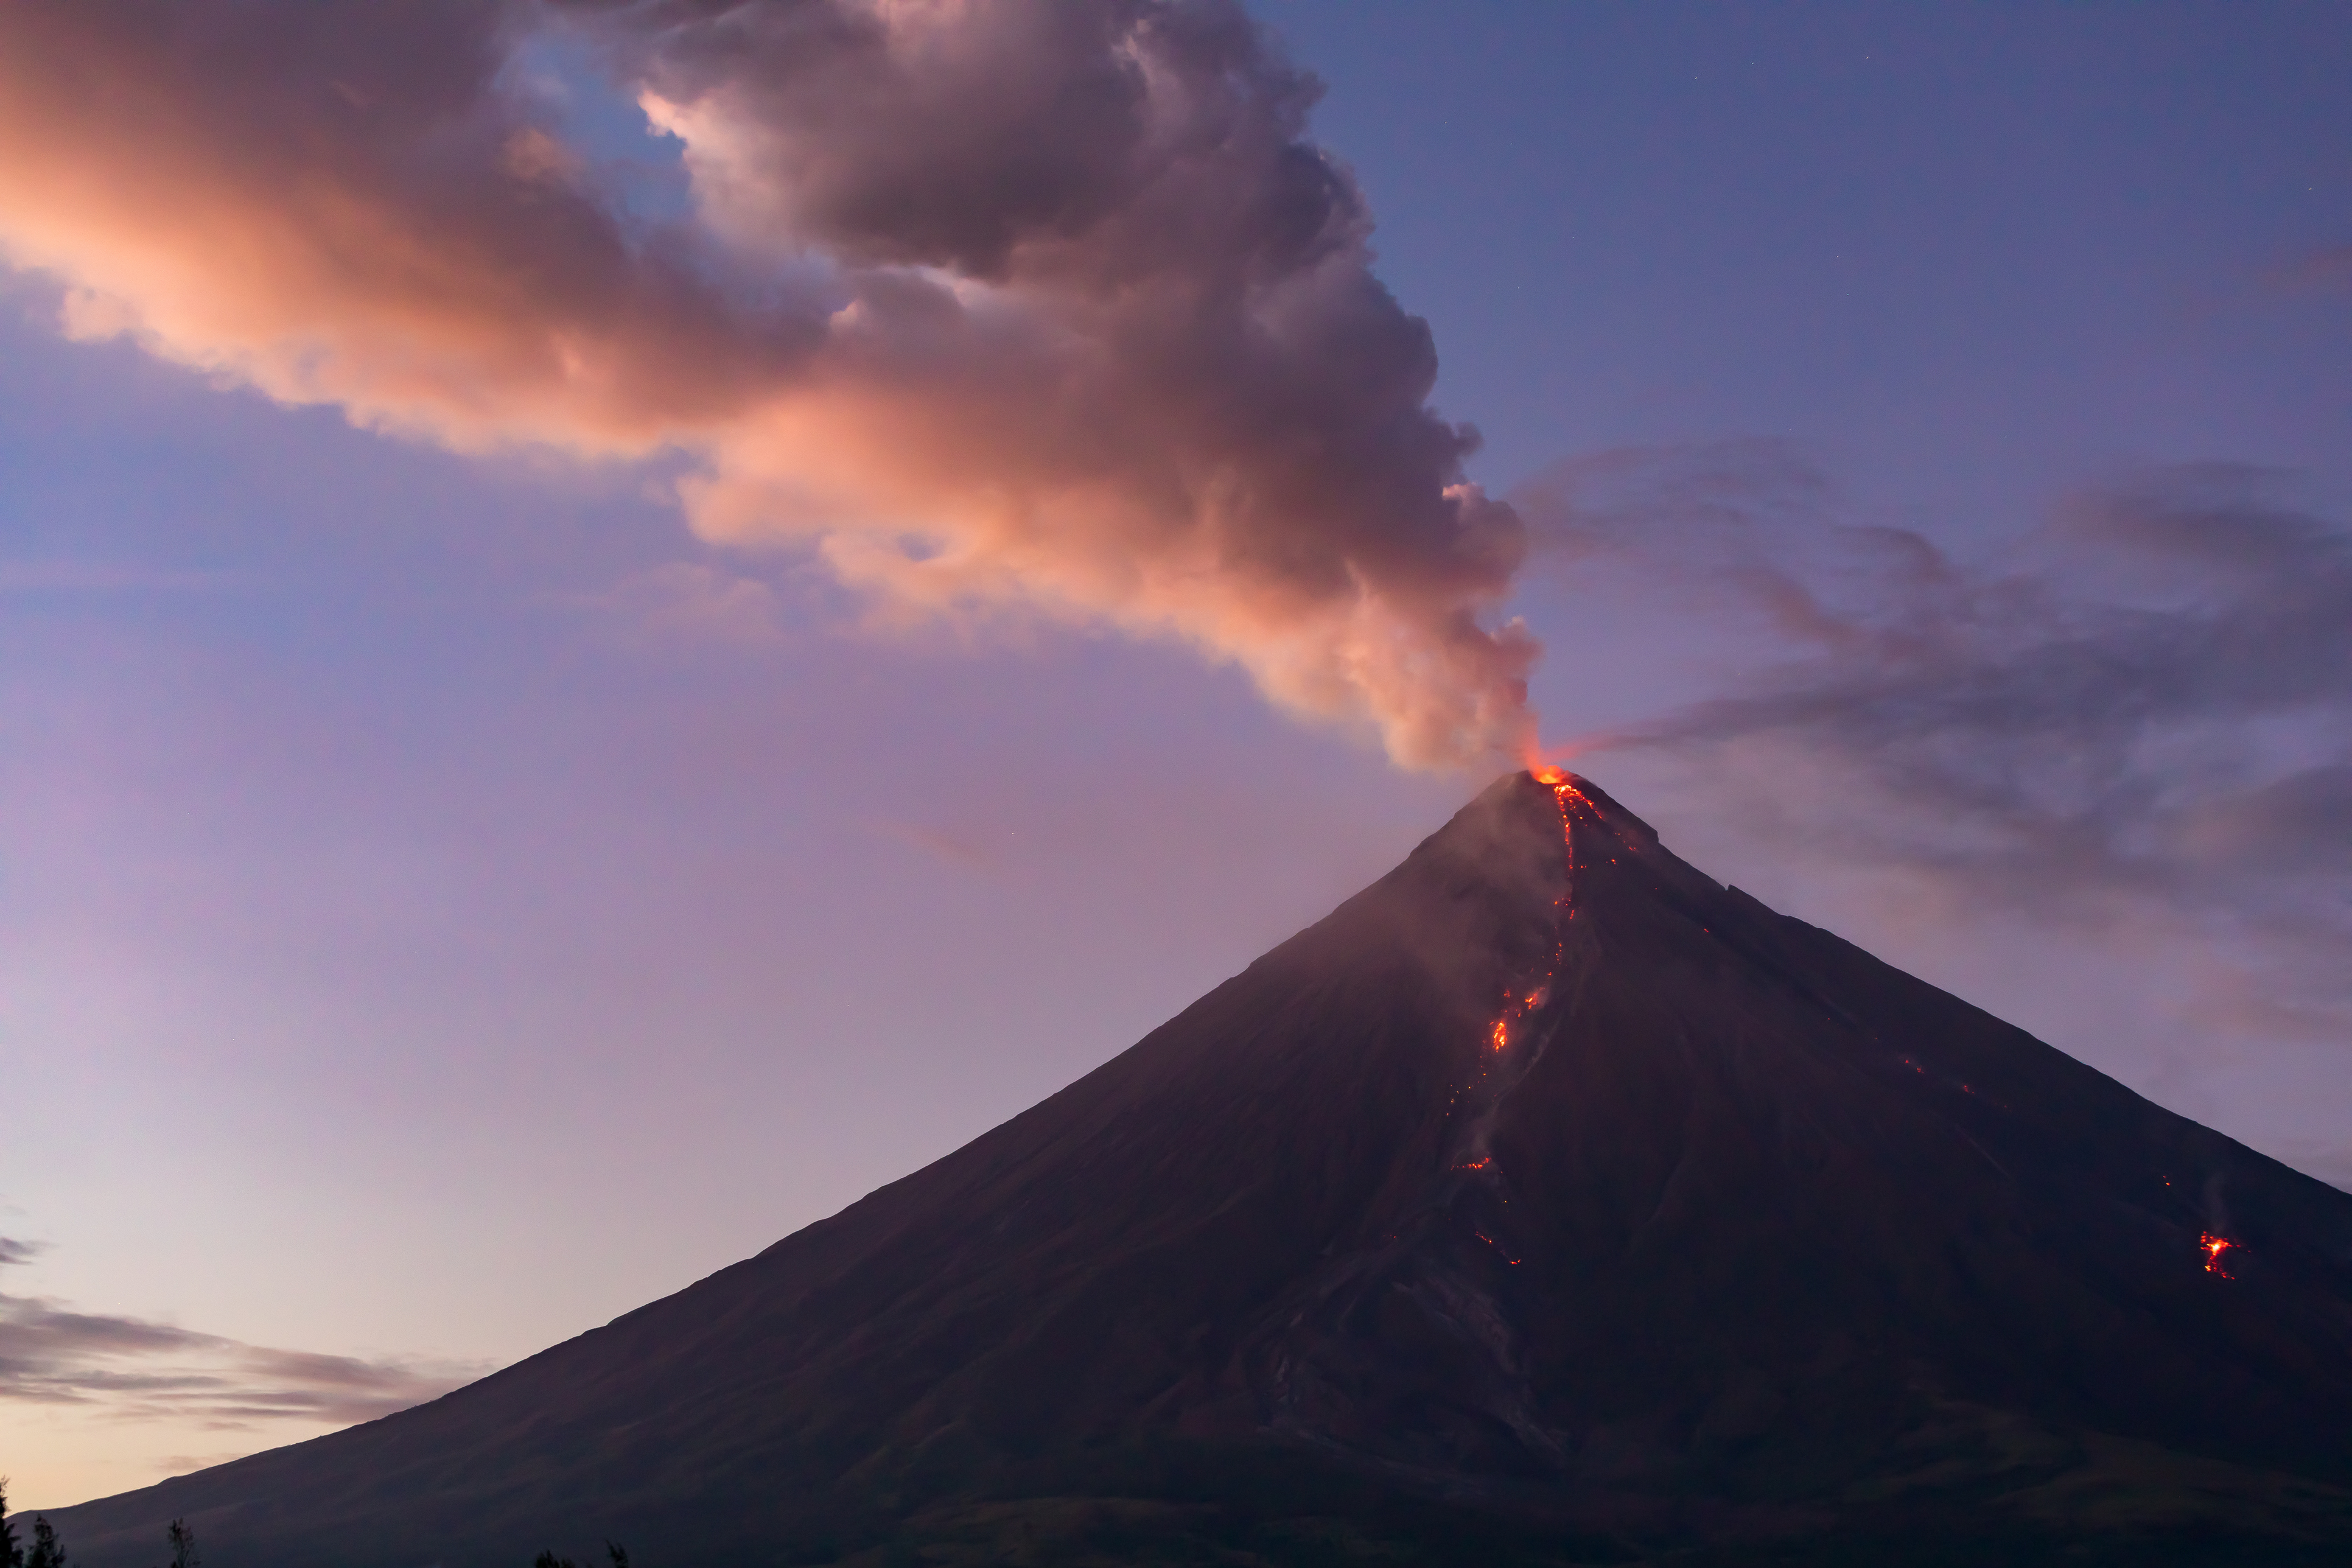 smoking Mayon Volcano at sunset